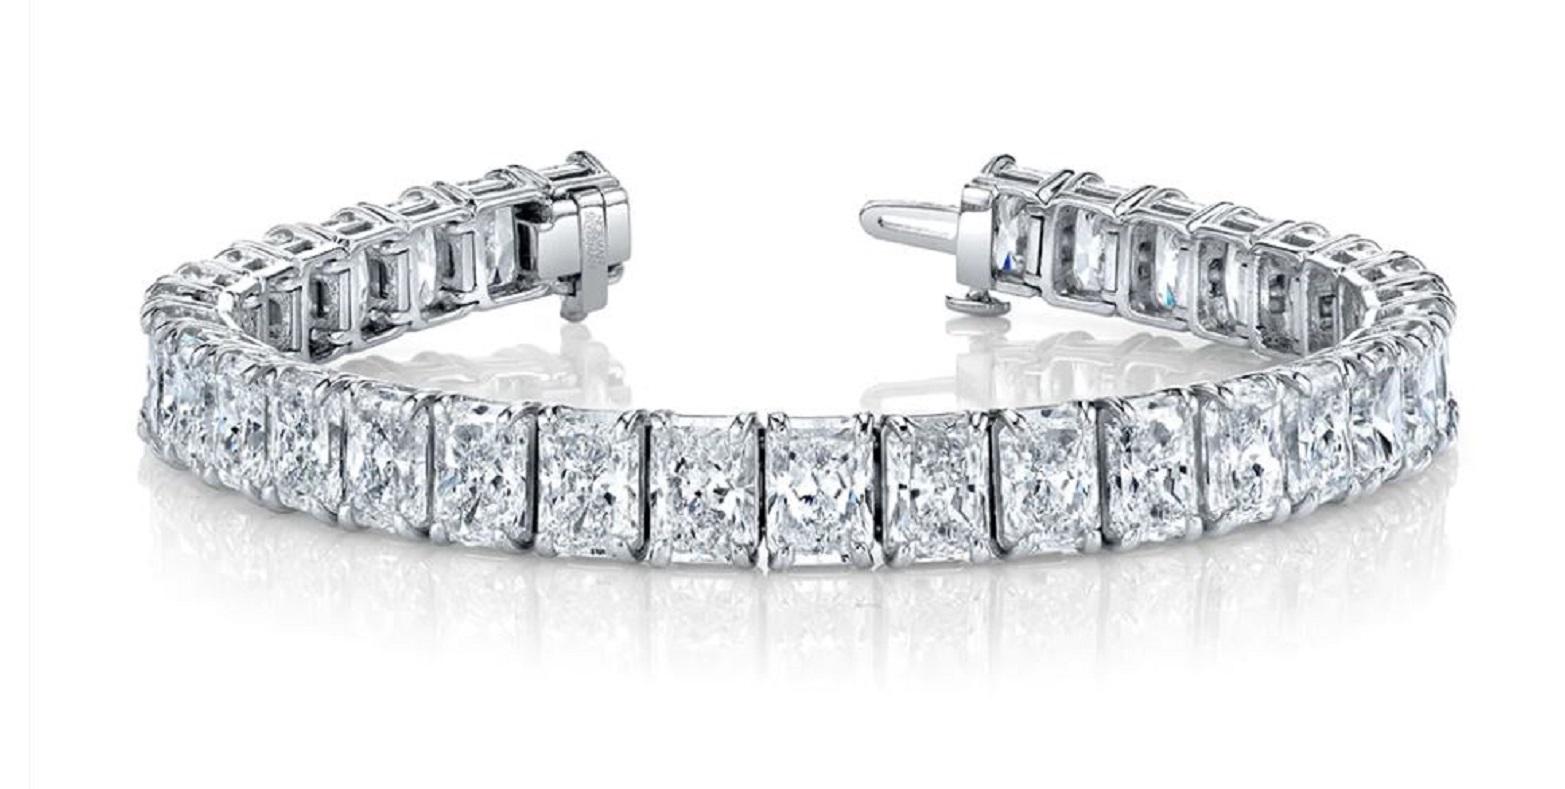 Platinarmband mit 4 Zacken und Diamanten  32,59 Karat GIA-zertifizierte Diamanten im Radiant-Schliff, Farbe I-J, Reinheit VS-SI, 32 Steine - jeder Diamant über 1 Karat, ausgezeichneter Schliff.